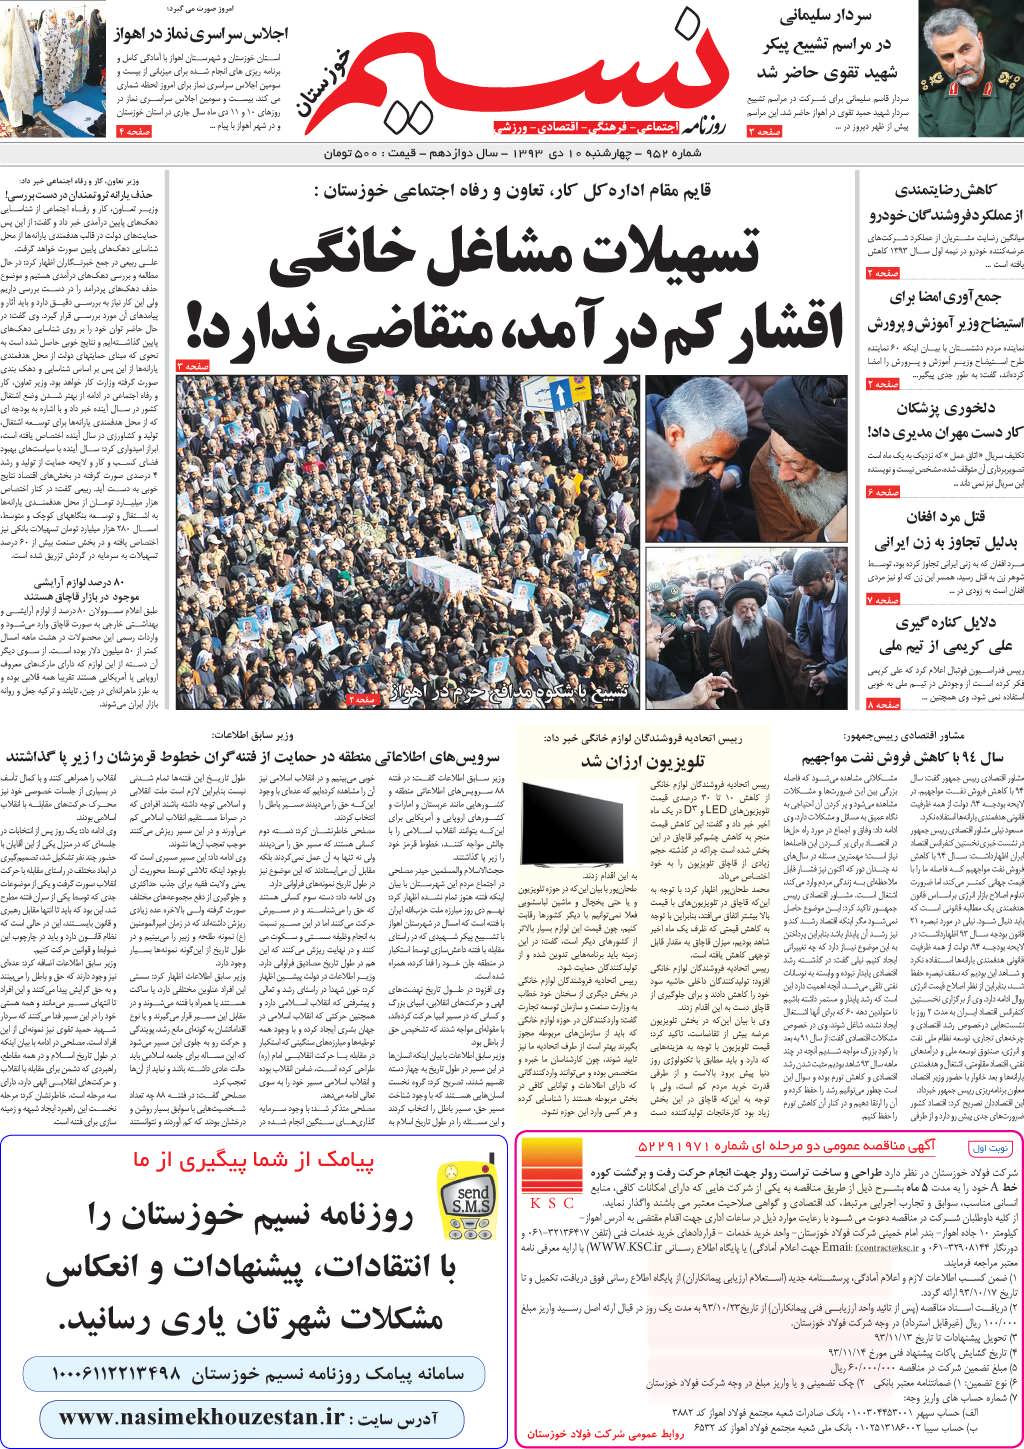 صفحه اصلی روزنامه نسیم شماره 952 